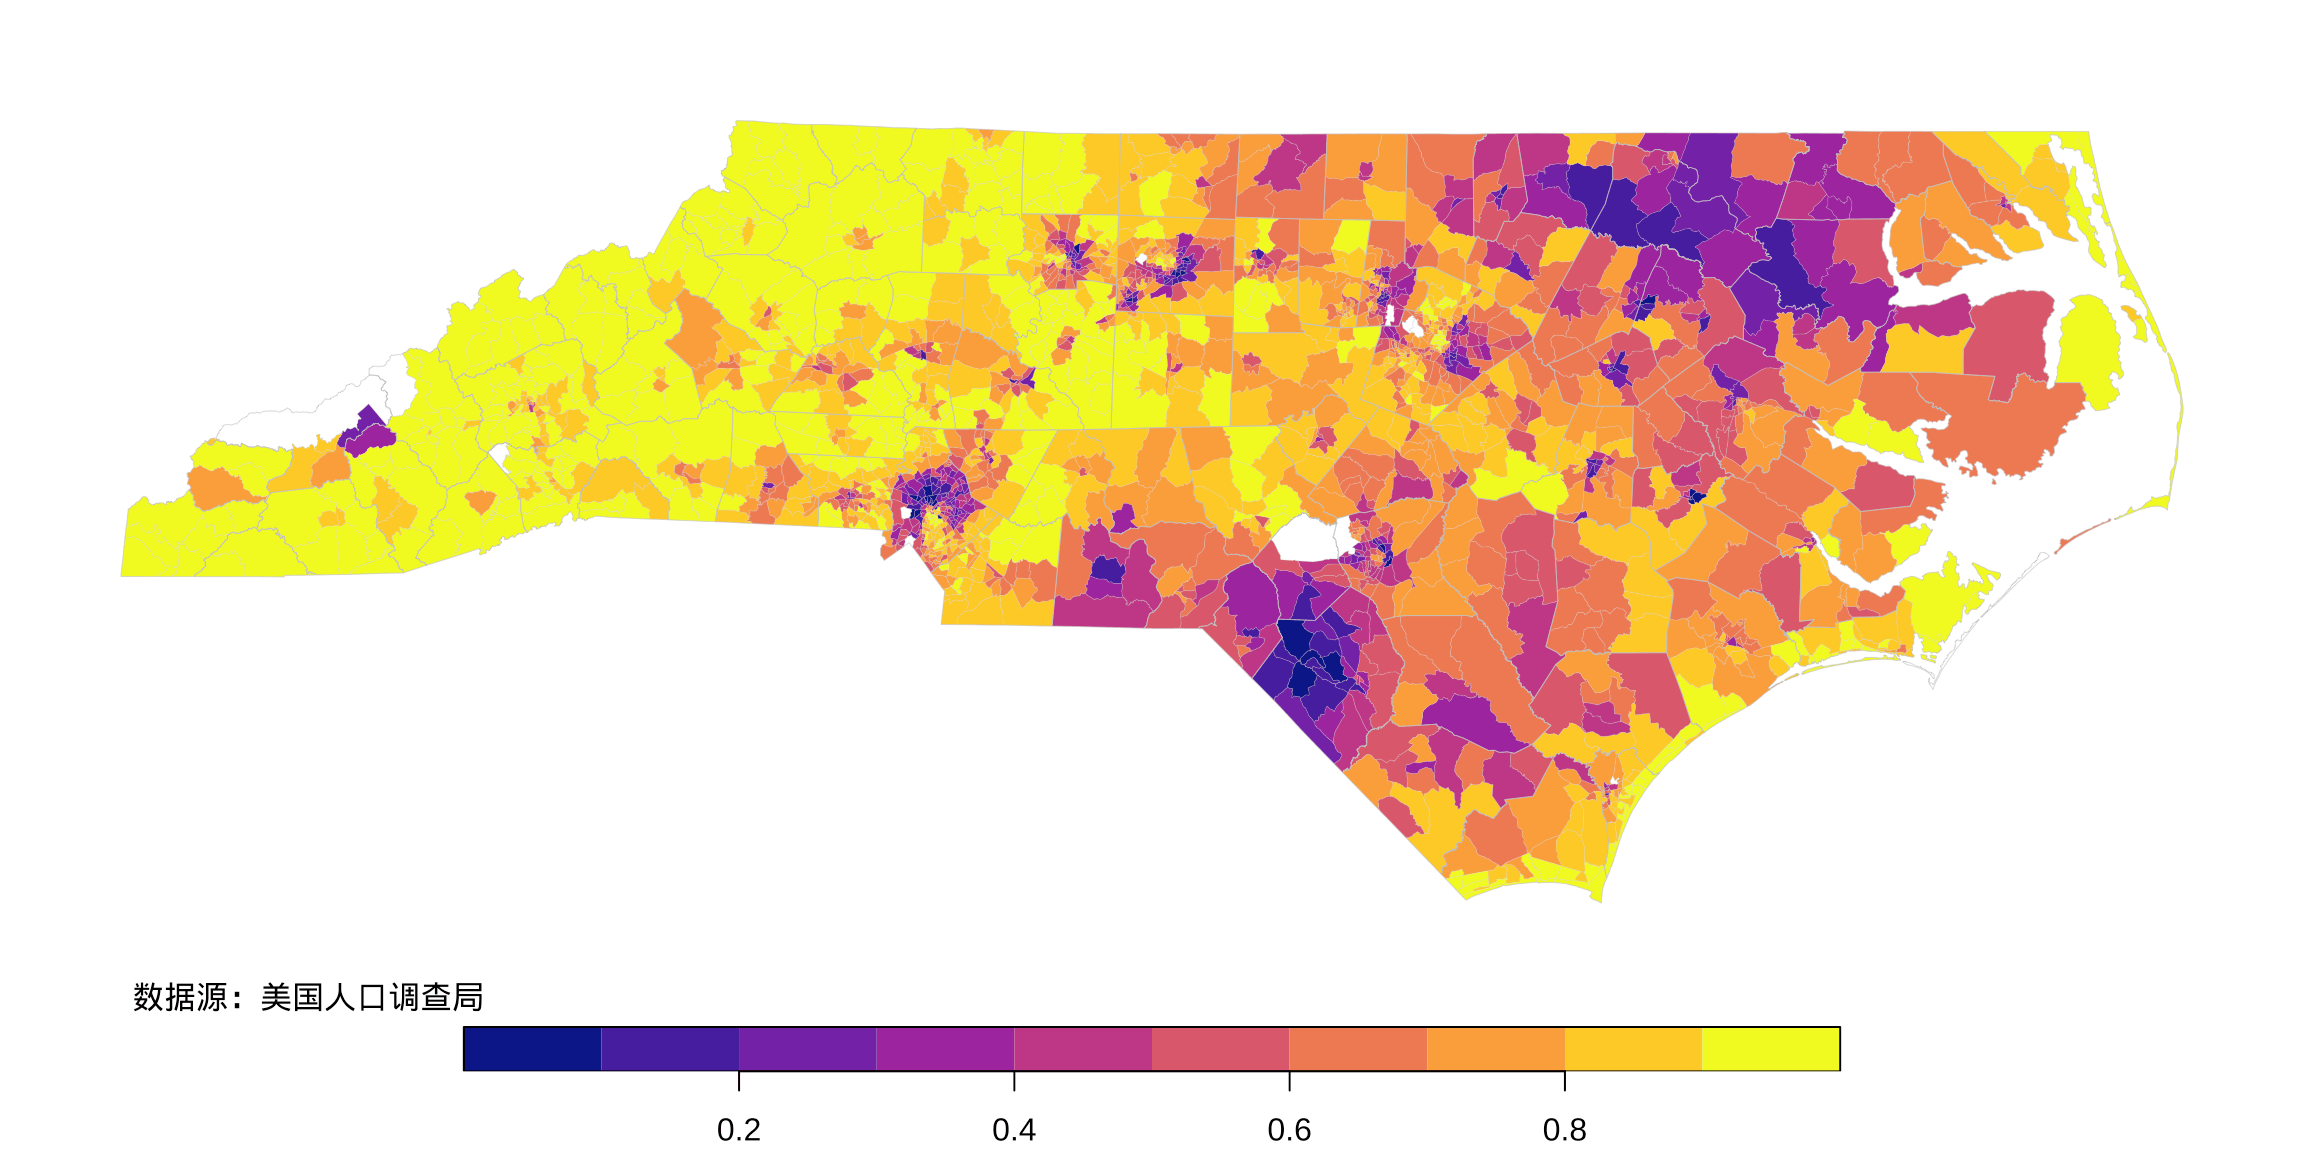 北卡州社区级白人占比的空间分布